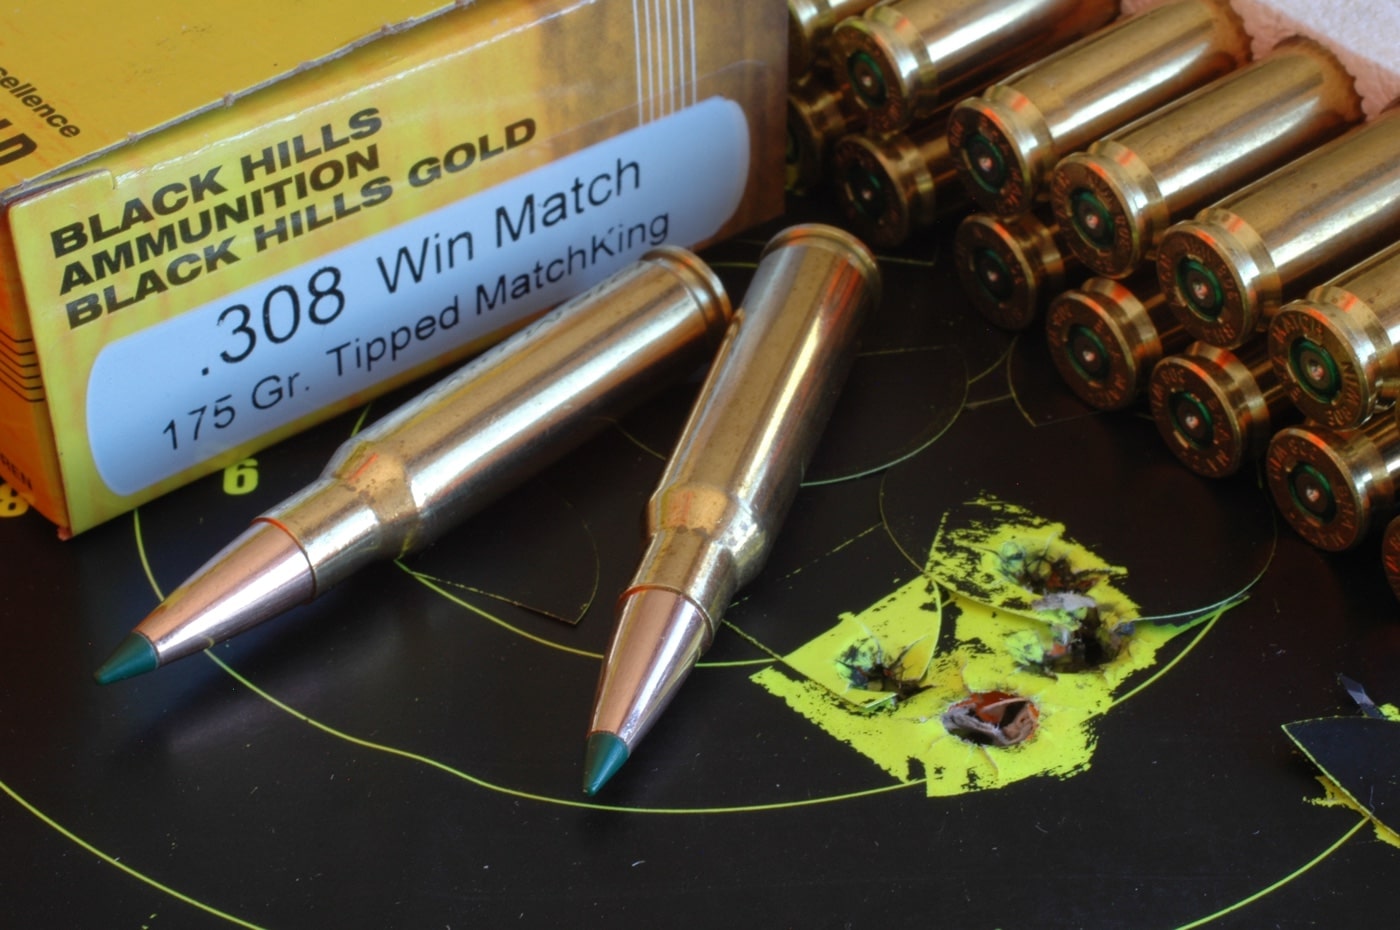 black hills ammunition 308 win bc ballistic coefficient